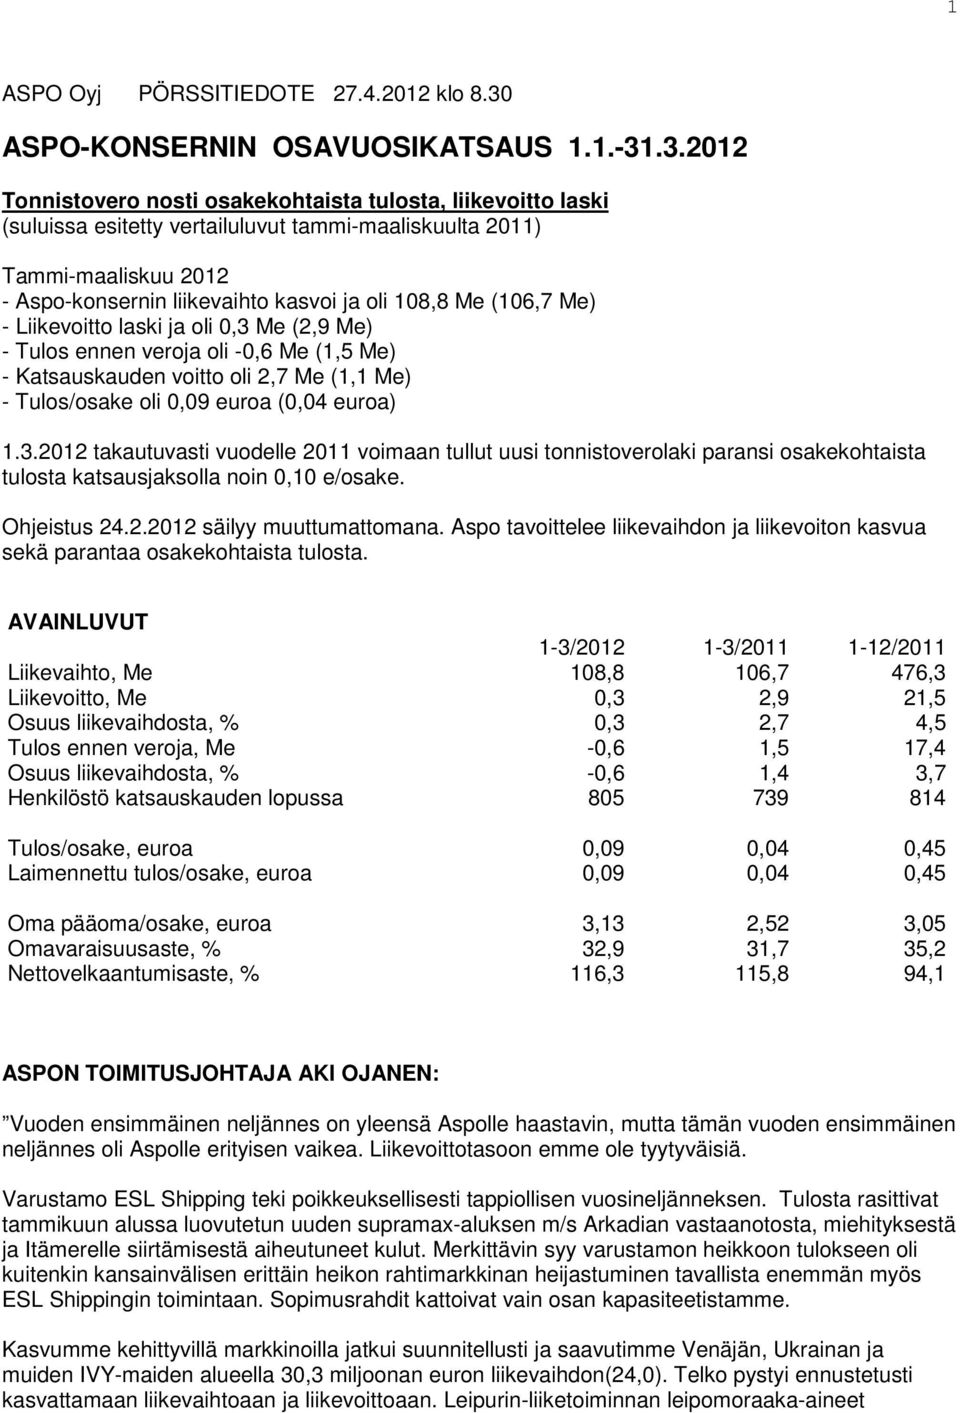 .3.2012 Tonnistovero nosti osakekohtaista tulosta, liikevoitto laski (suluissa esitetty vertailuluvut tammi-maaliskuulta 2011) Tammi-maaliskuu 2012 - Aspo-konsernin liikevaihto kasvoi ja oli 108,8 Me